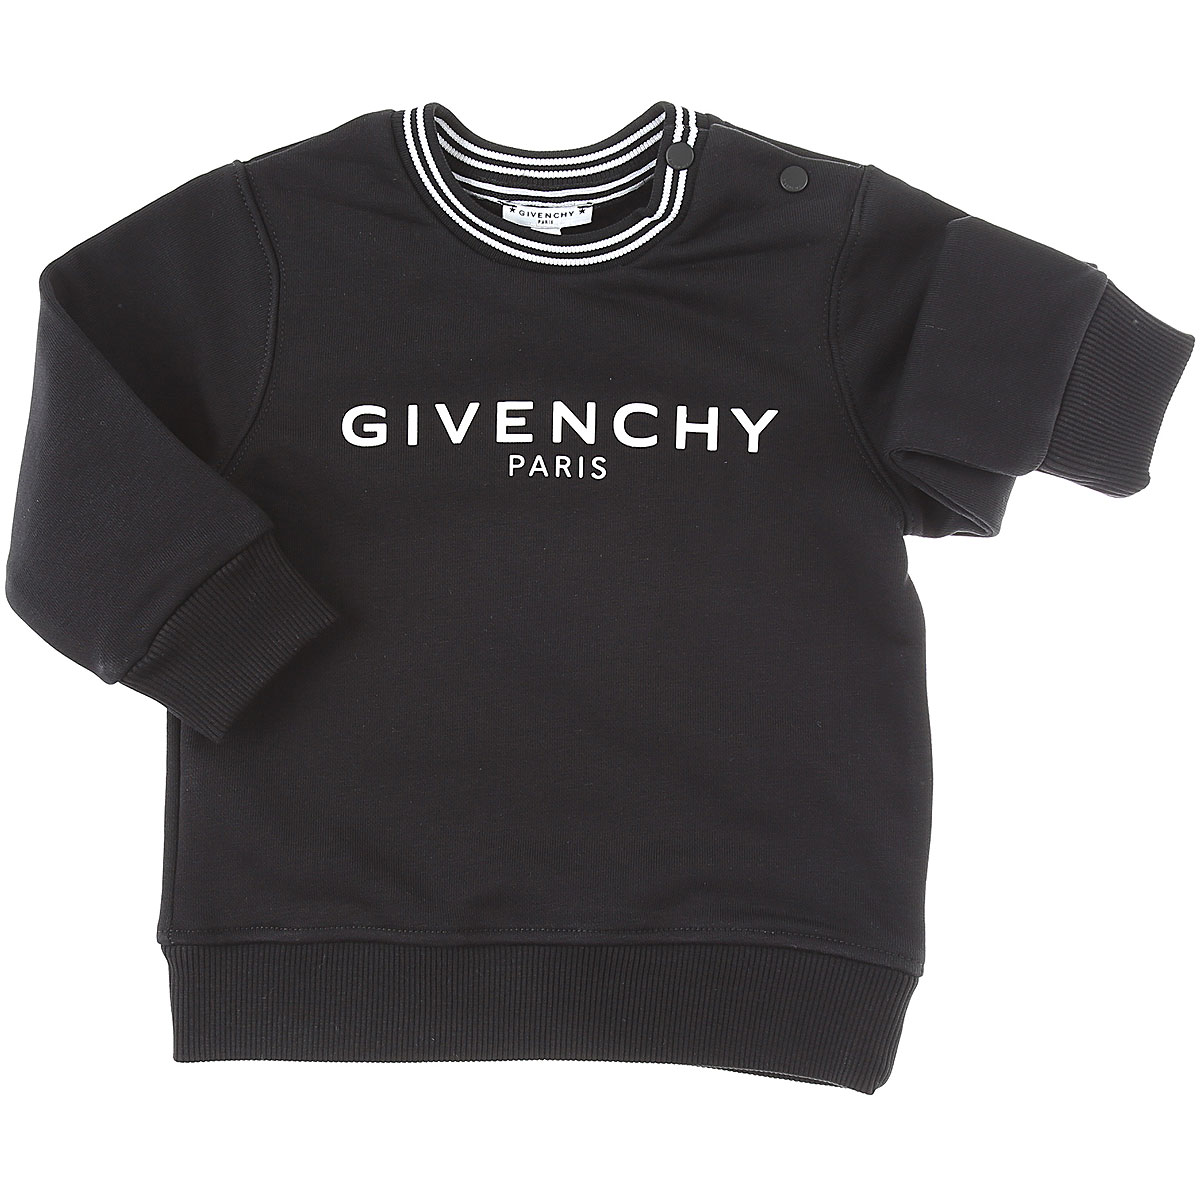 Givenchy Baby Sweatshirt & Kapuzenpullover für Jungen Günstig im Sale, Schwarz, Baumwolle, 2017, 12 M 18M 3Y 9M